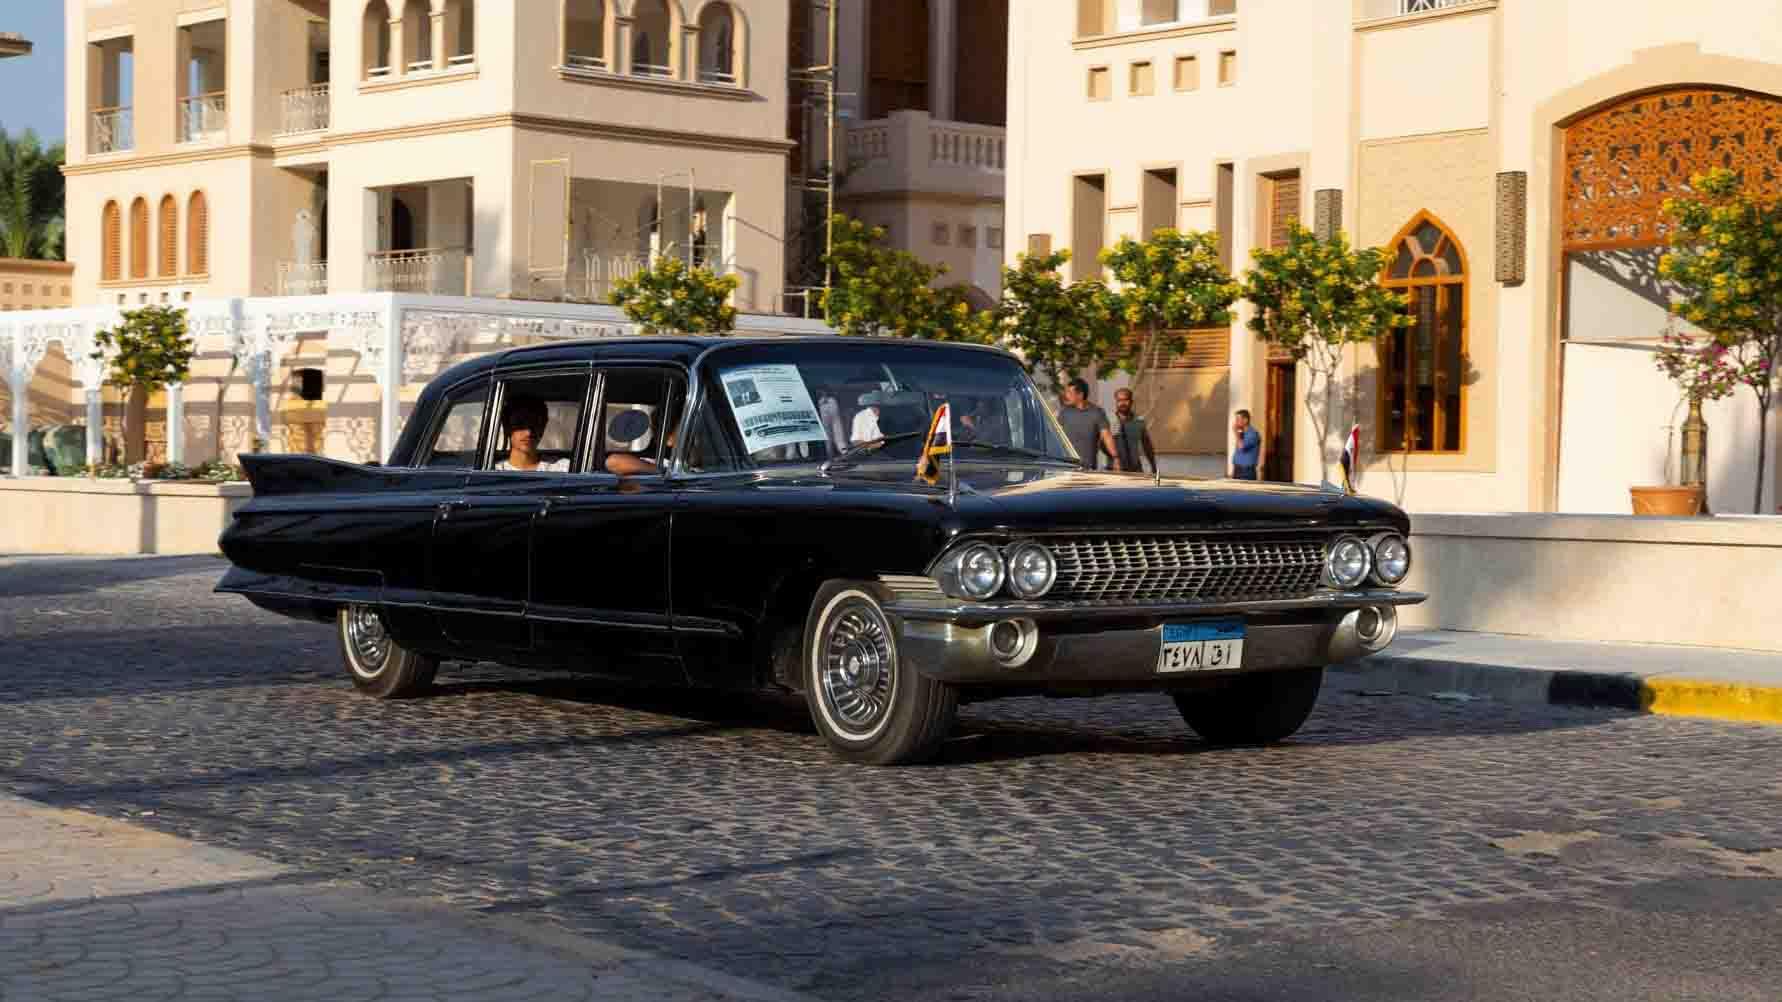 سيارة الرئيس جمال عبد الناصر كاديلاك فليتوود 75 (1)